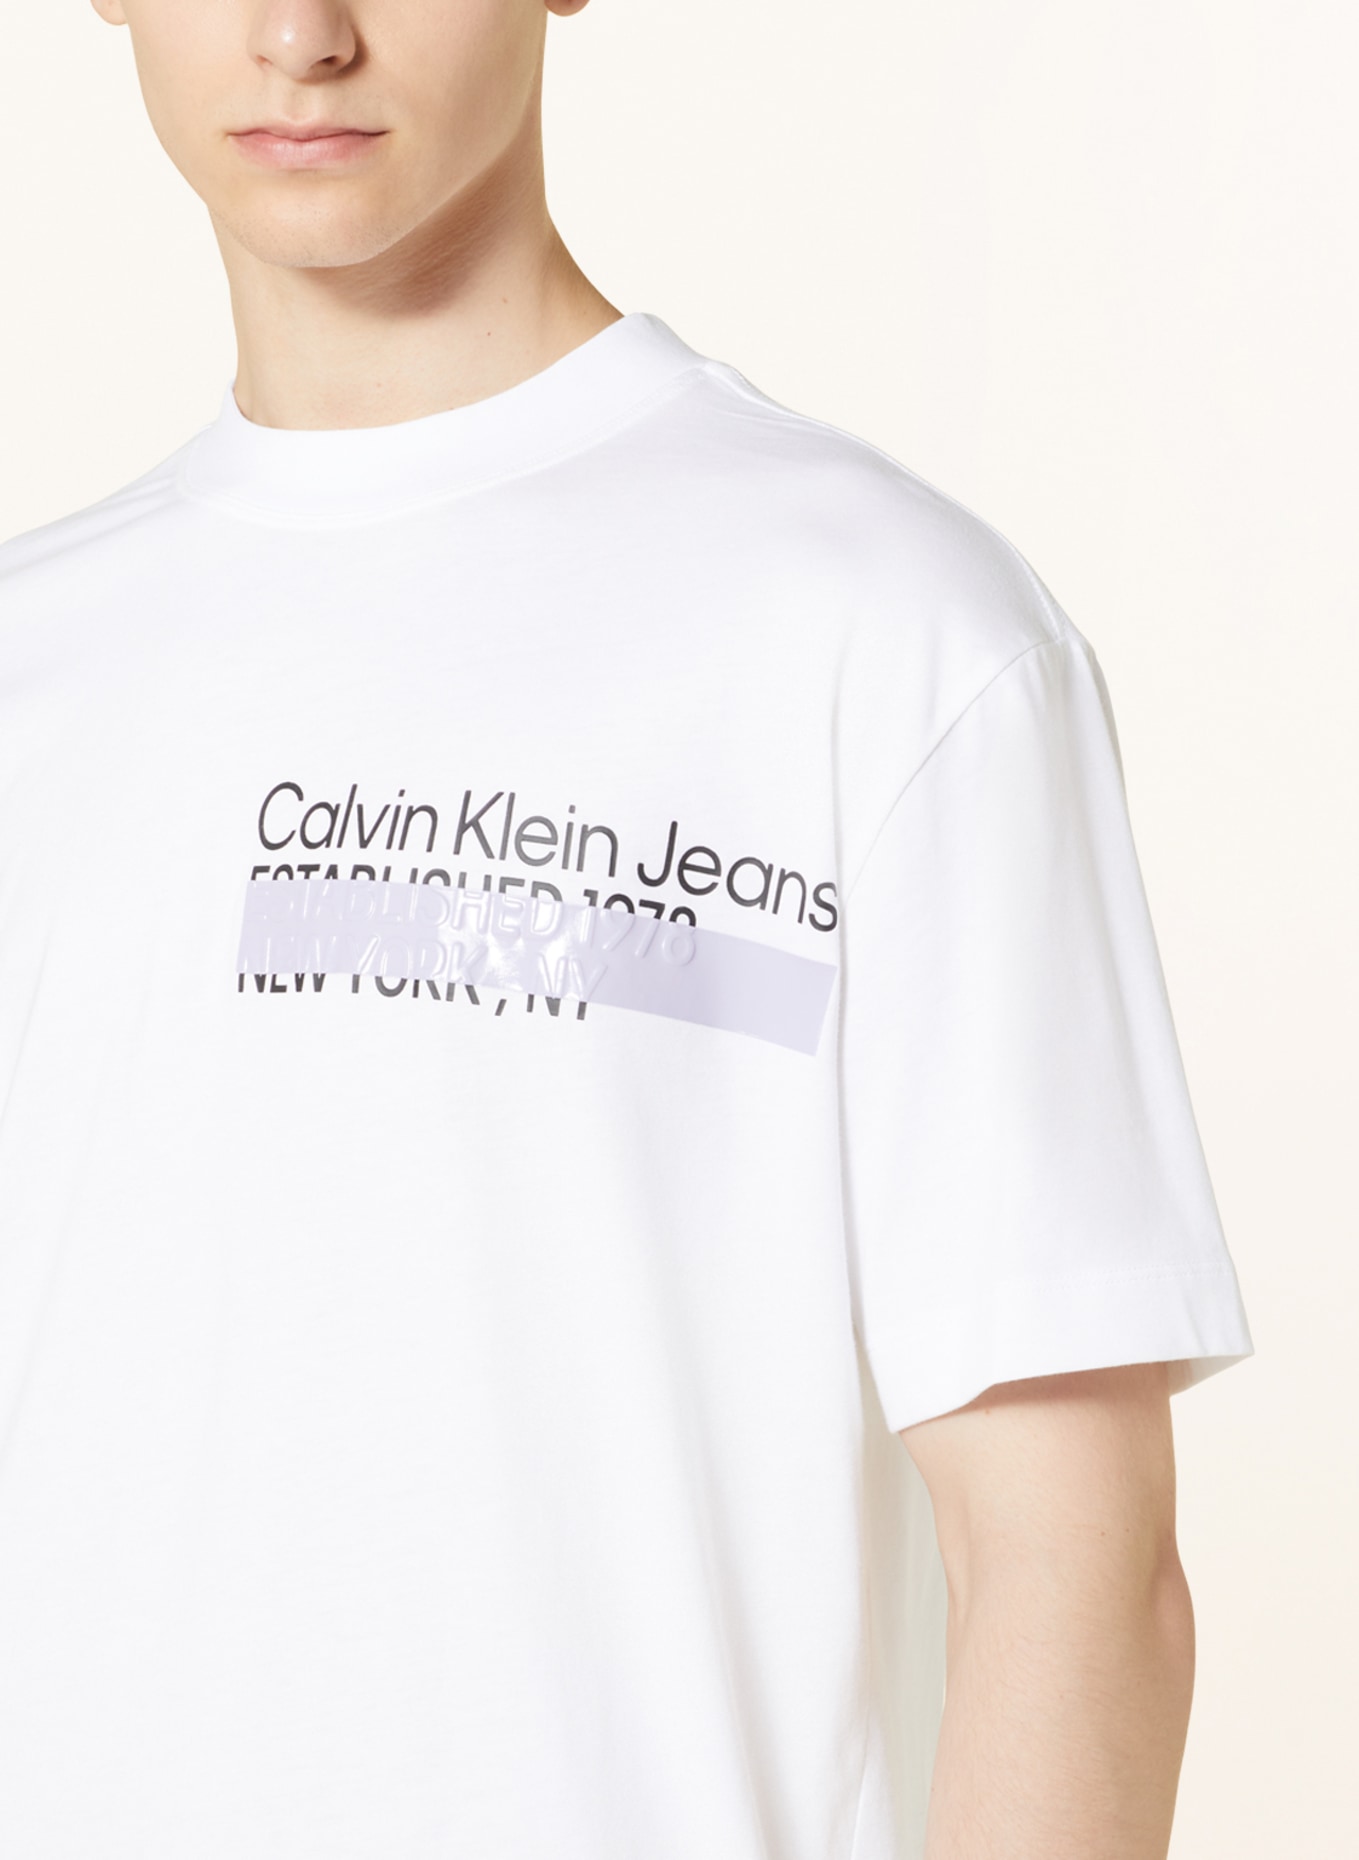 Calvin Klein Jeans T-Shirt in weiss/ schwarz/ helllila